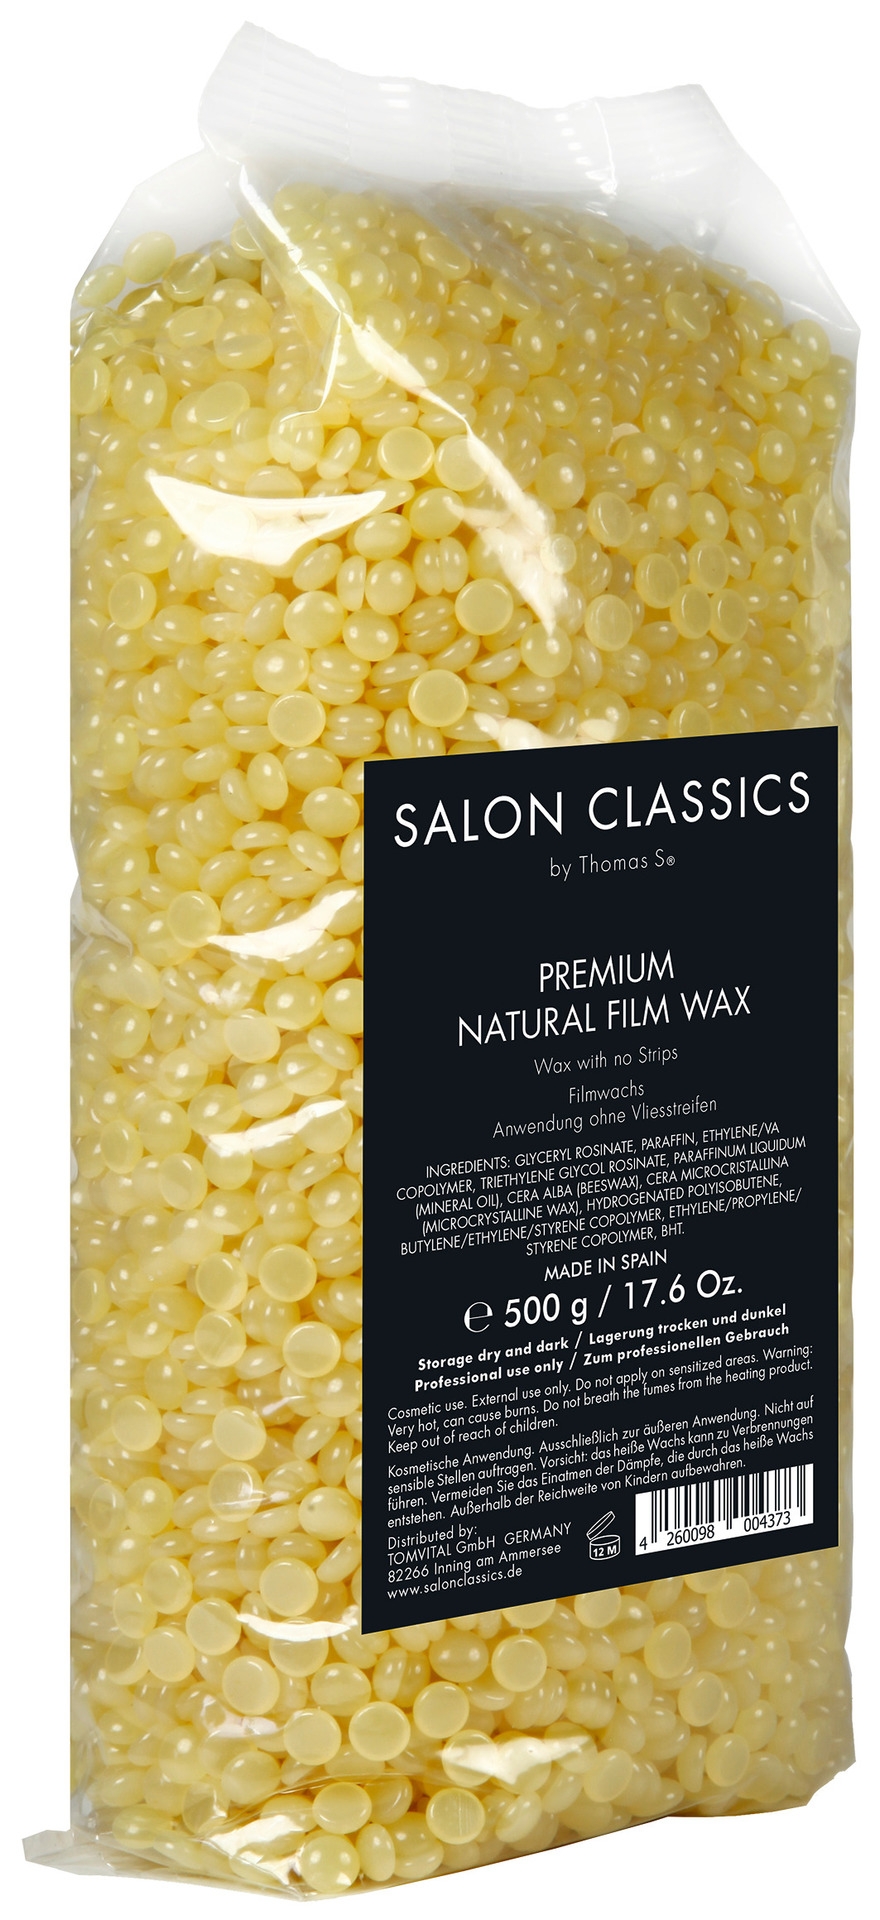 Berodin Salon Classics Natural Film Wax Pearls | 500 g